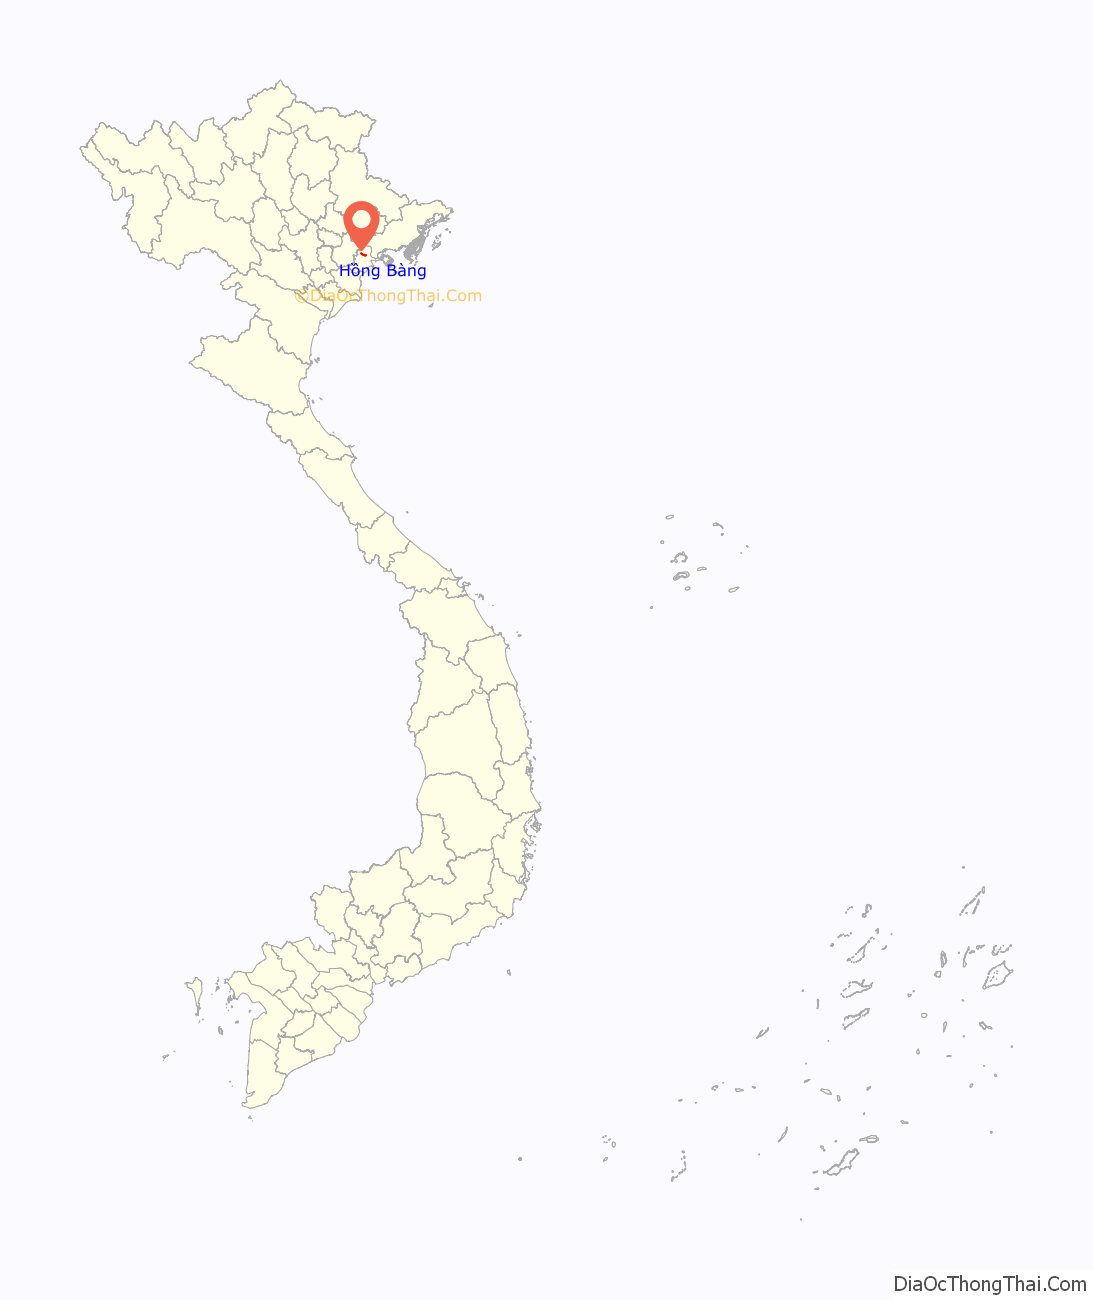 Quận Hồng Bàng ở đâu? Vị trí của quận Hồng Bàng